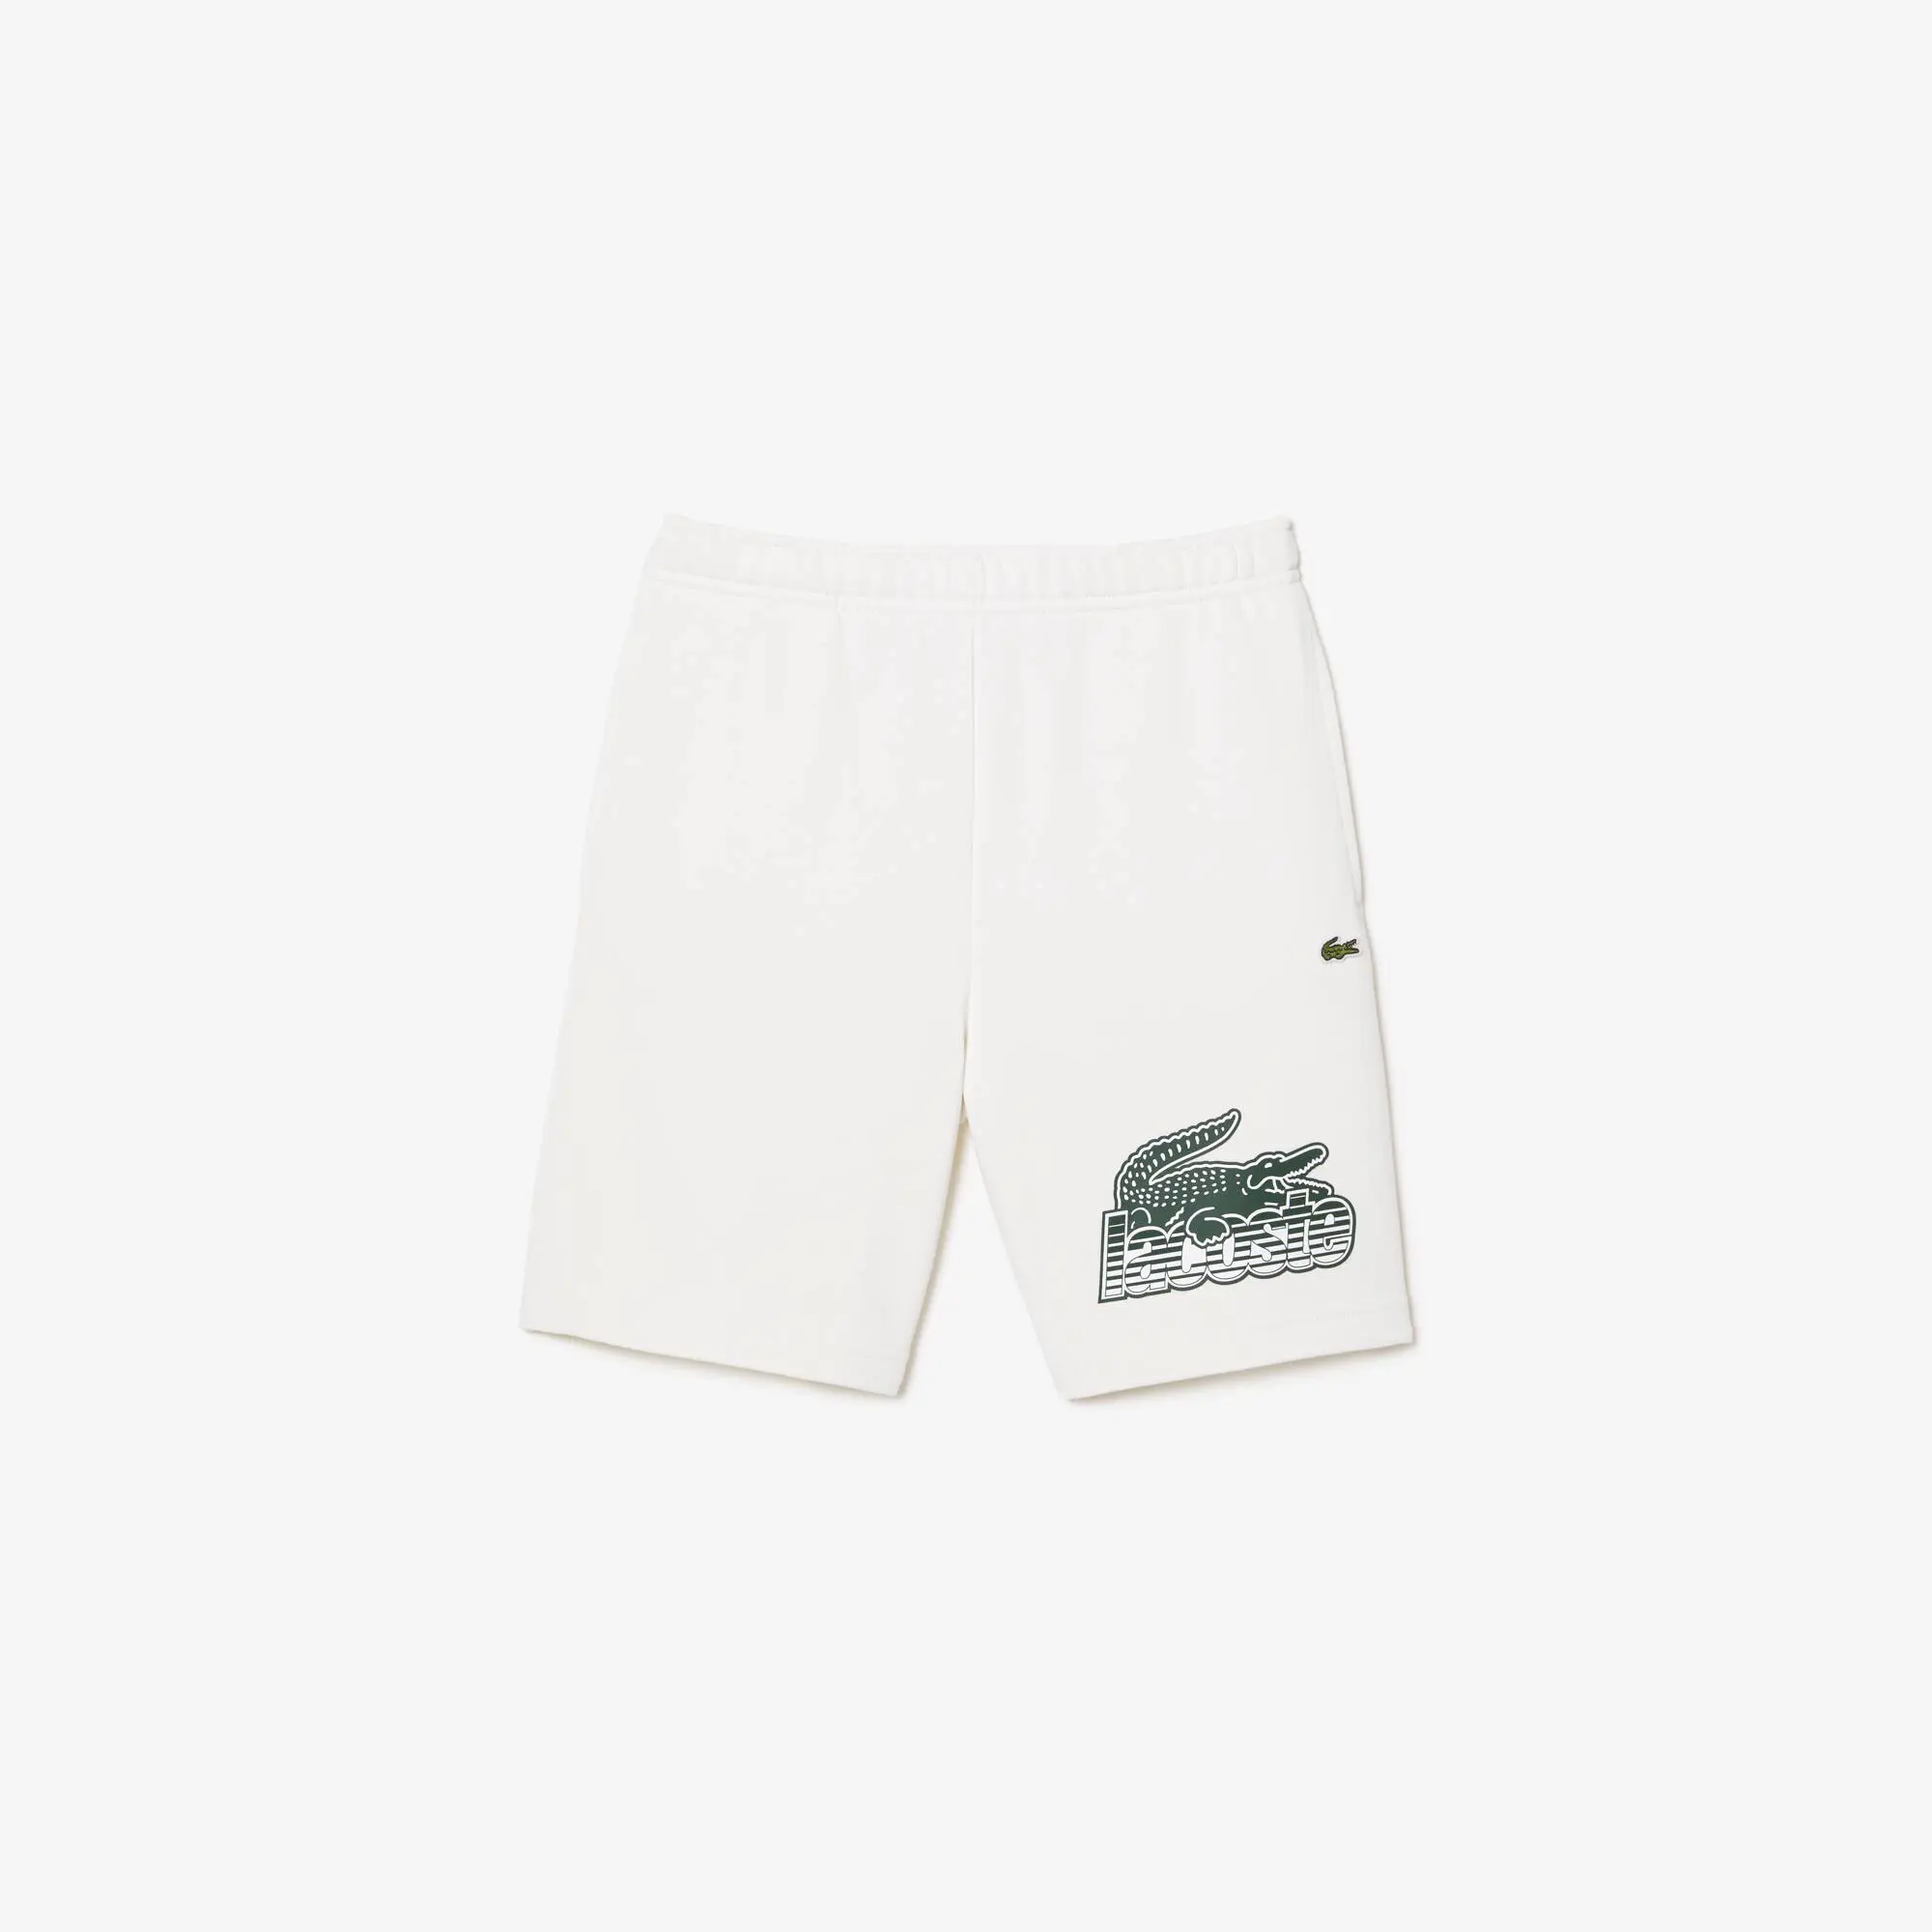 Lacoste Pantaloni corti da bambino con stampa a contrasto con logo Lacoste. 2